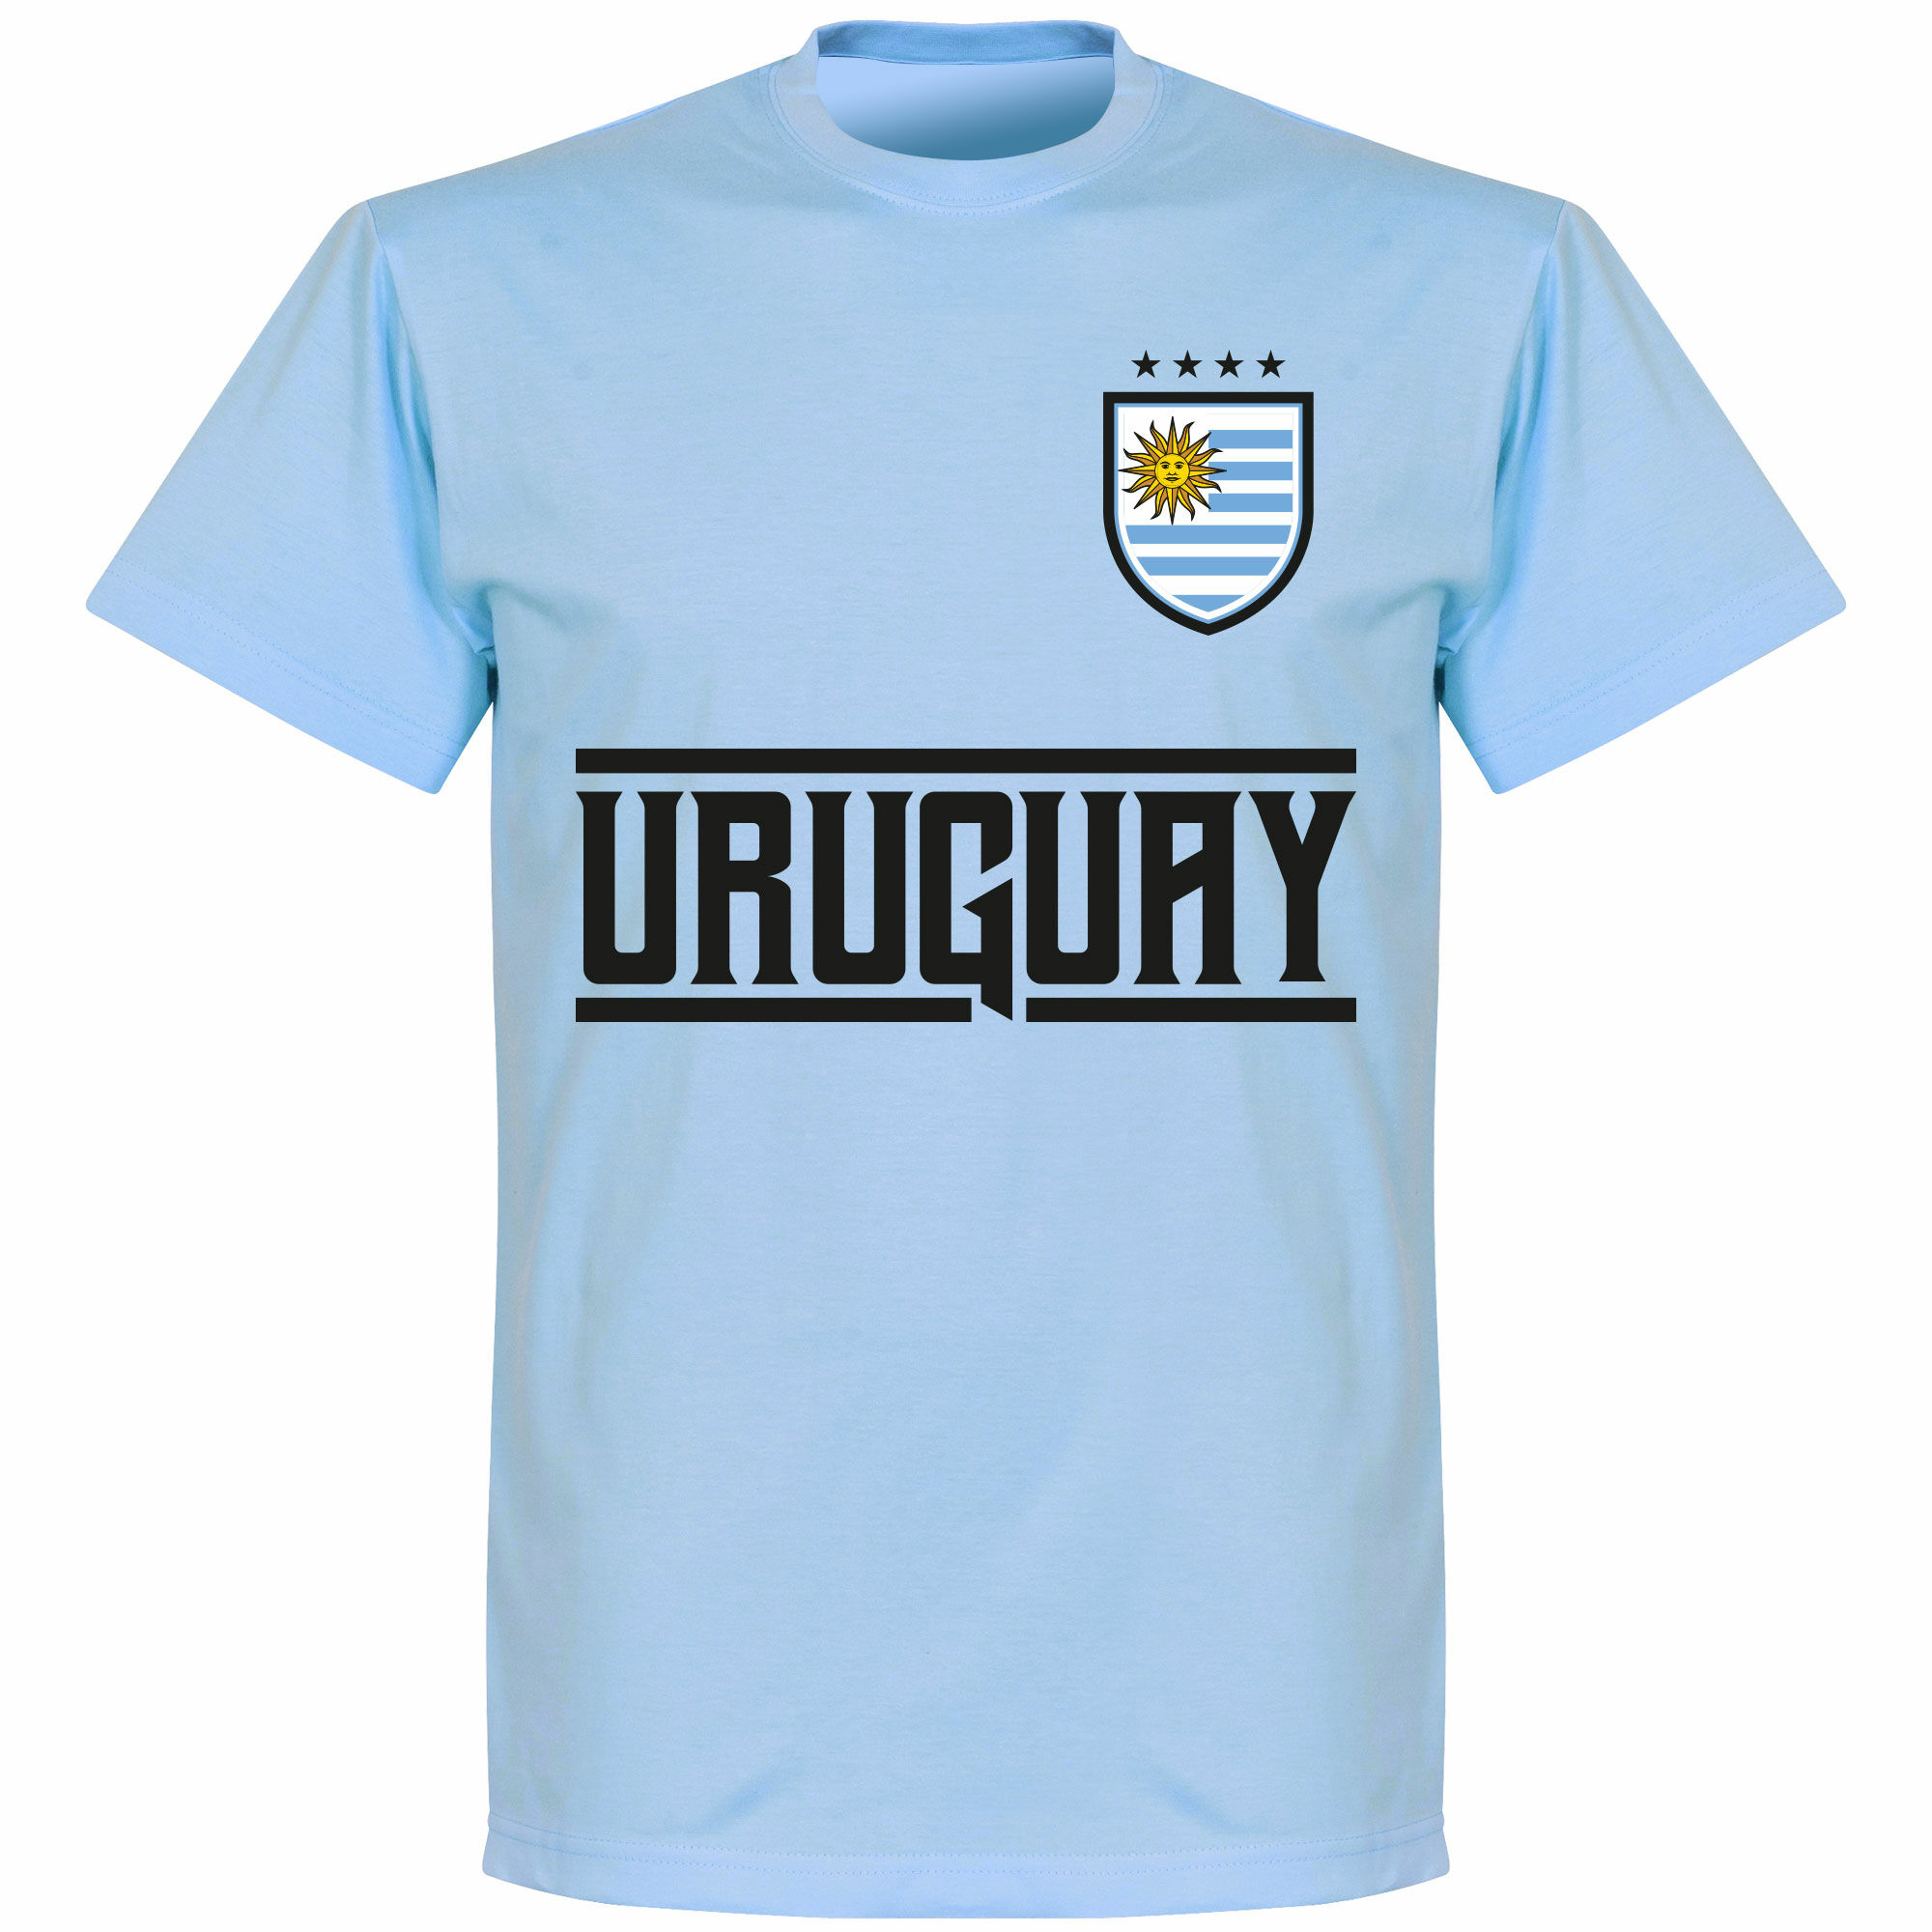 Uruguay - Tričko dětské - modré